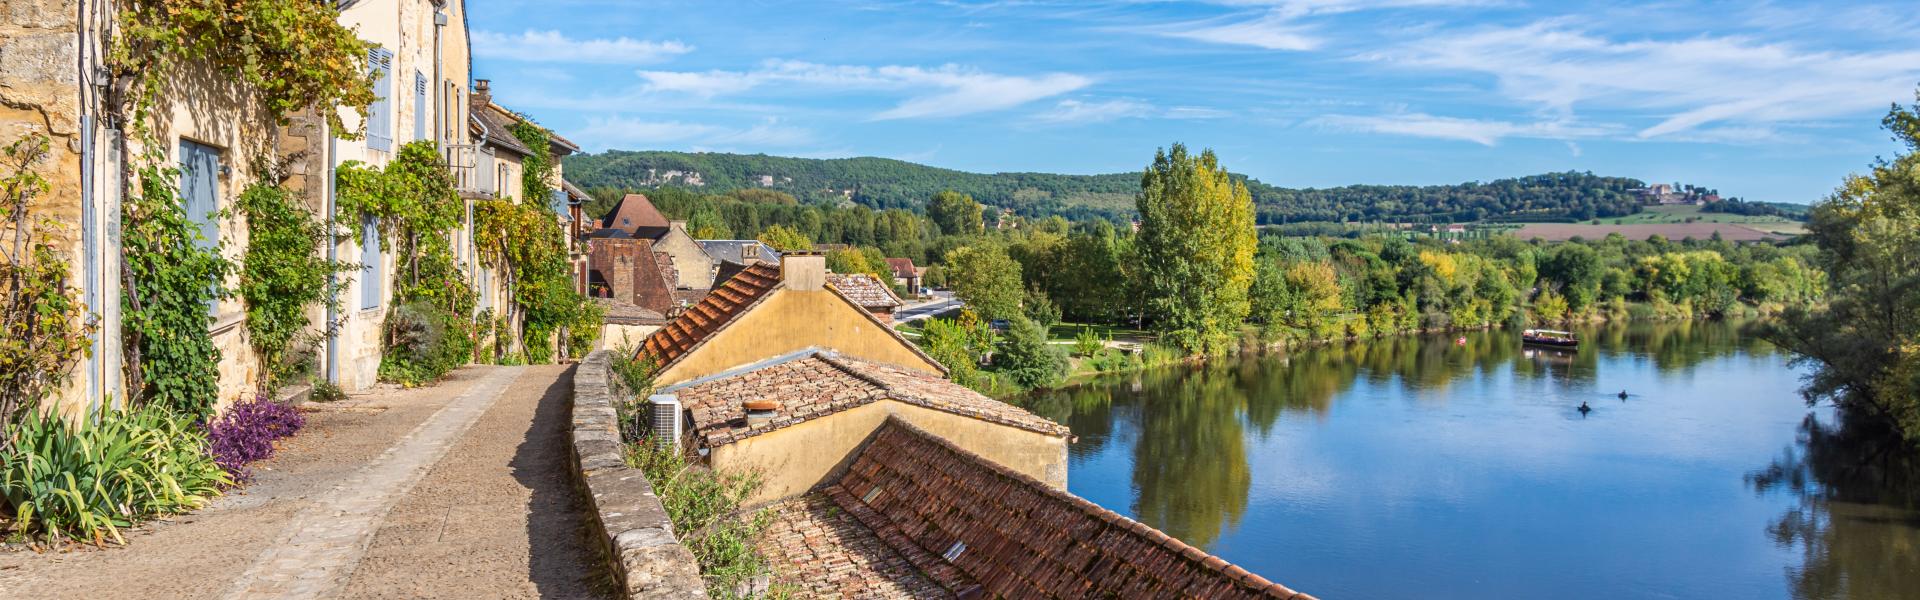 Ferienwohnungen & Ferienhäuser für Urlaub in der Dordogne - Casamundo